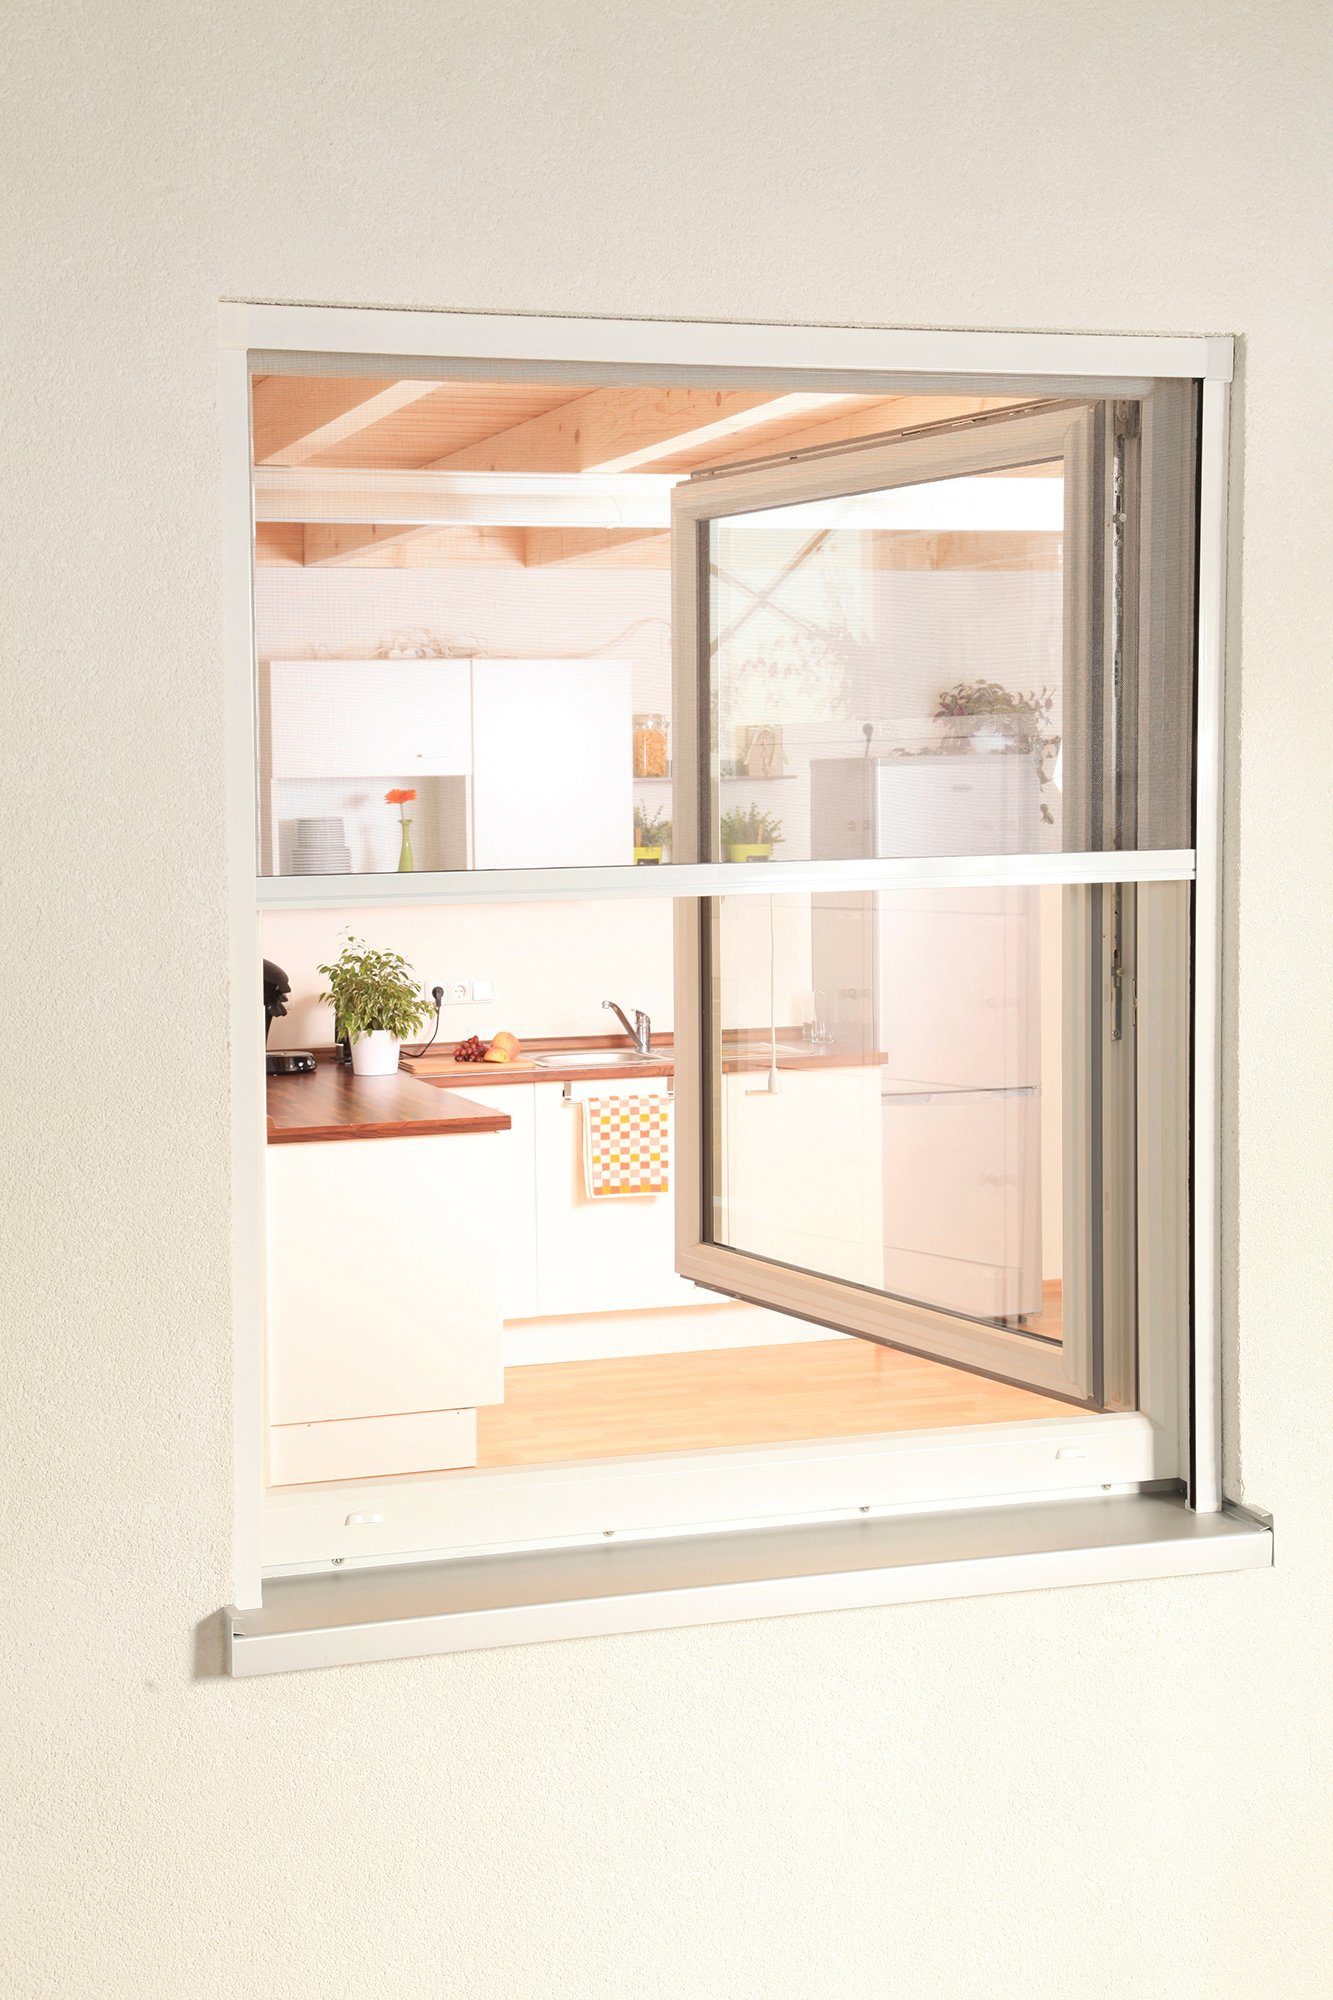 Insektenschutzrollo SMART, hecht international, transparent, verschraubt, für Fenster, weiß/anthrazit, BxH: 80x160 cm